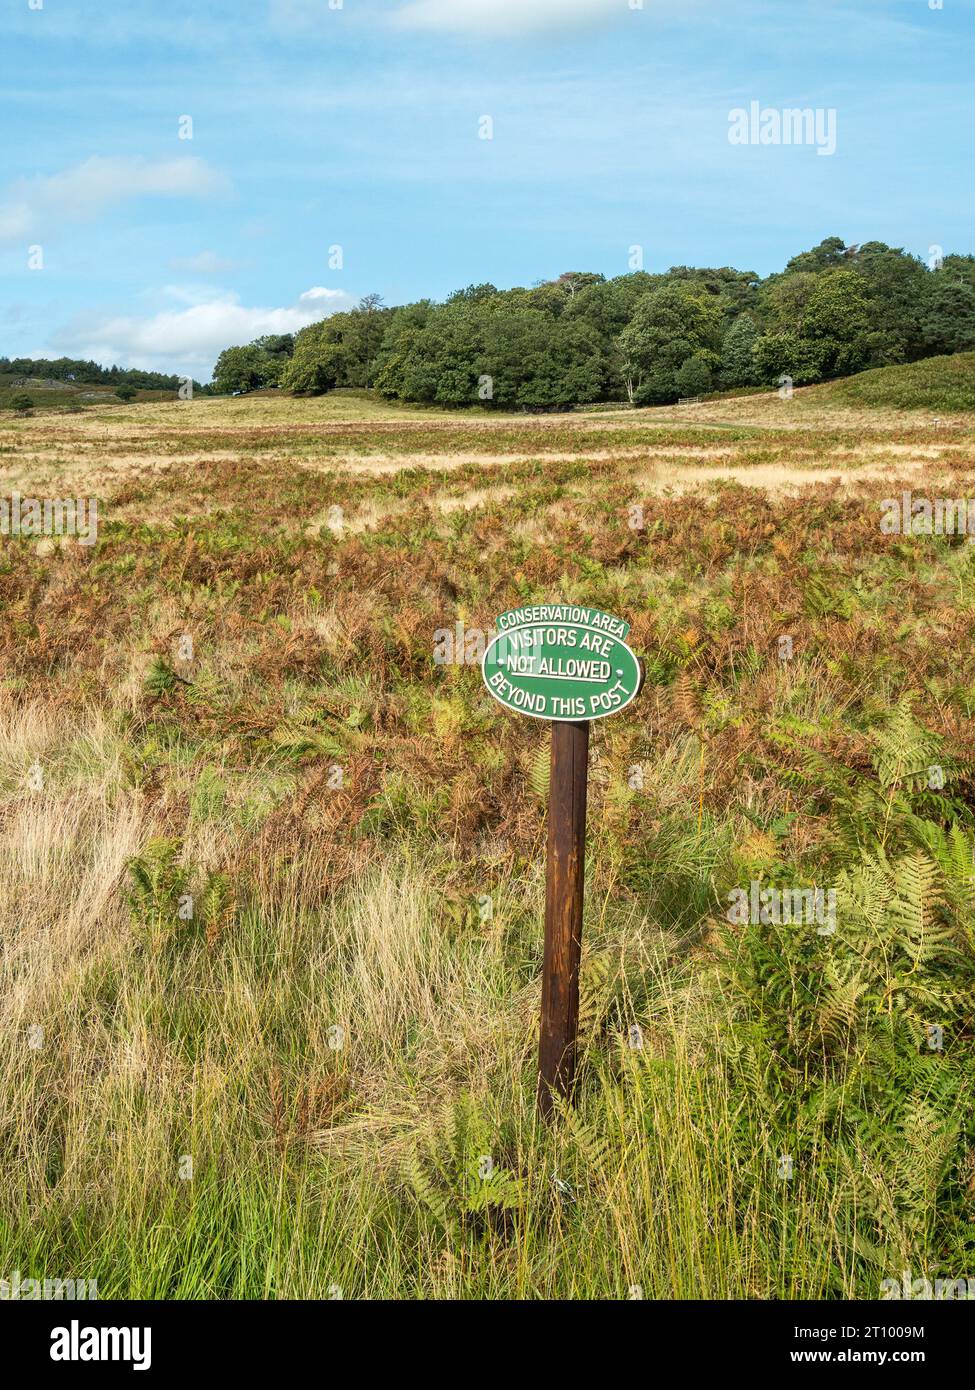 Panneau de zone de conservation. Visiteurs non autorisés au-delà de ce point. Bradgate Park, Leicestershire, Angleterre, Royaume-Uni Banque D'Images